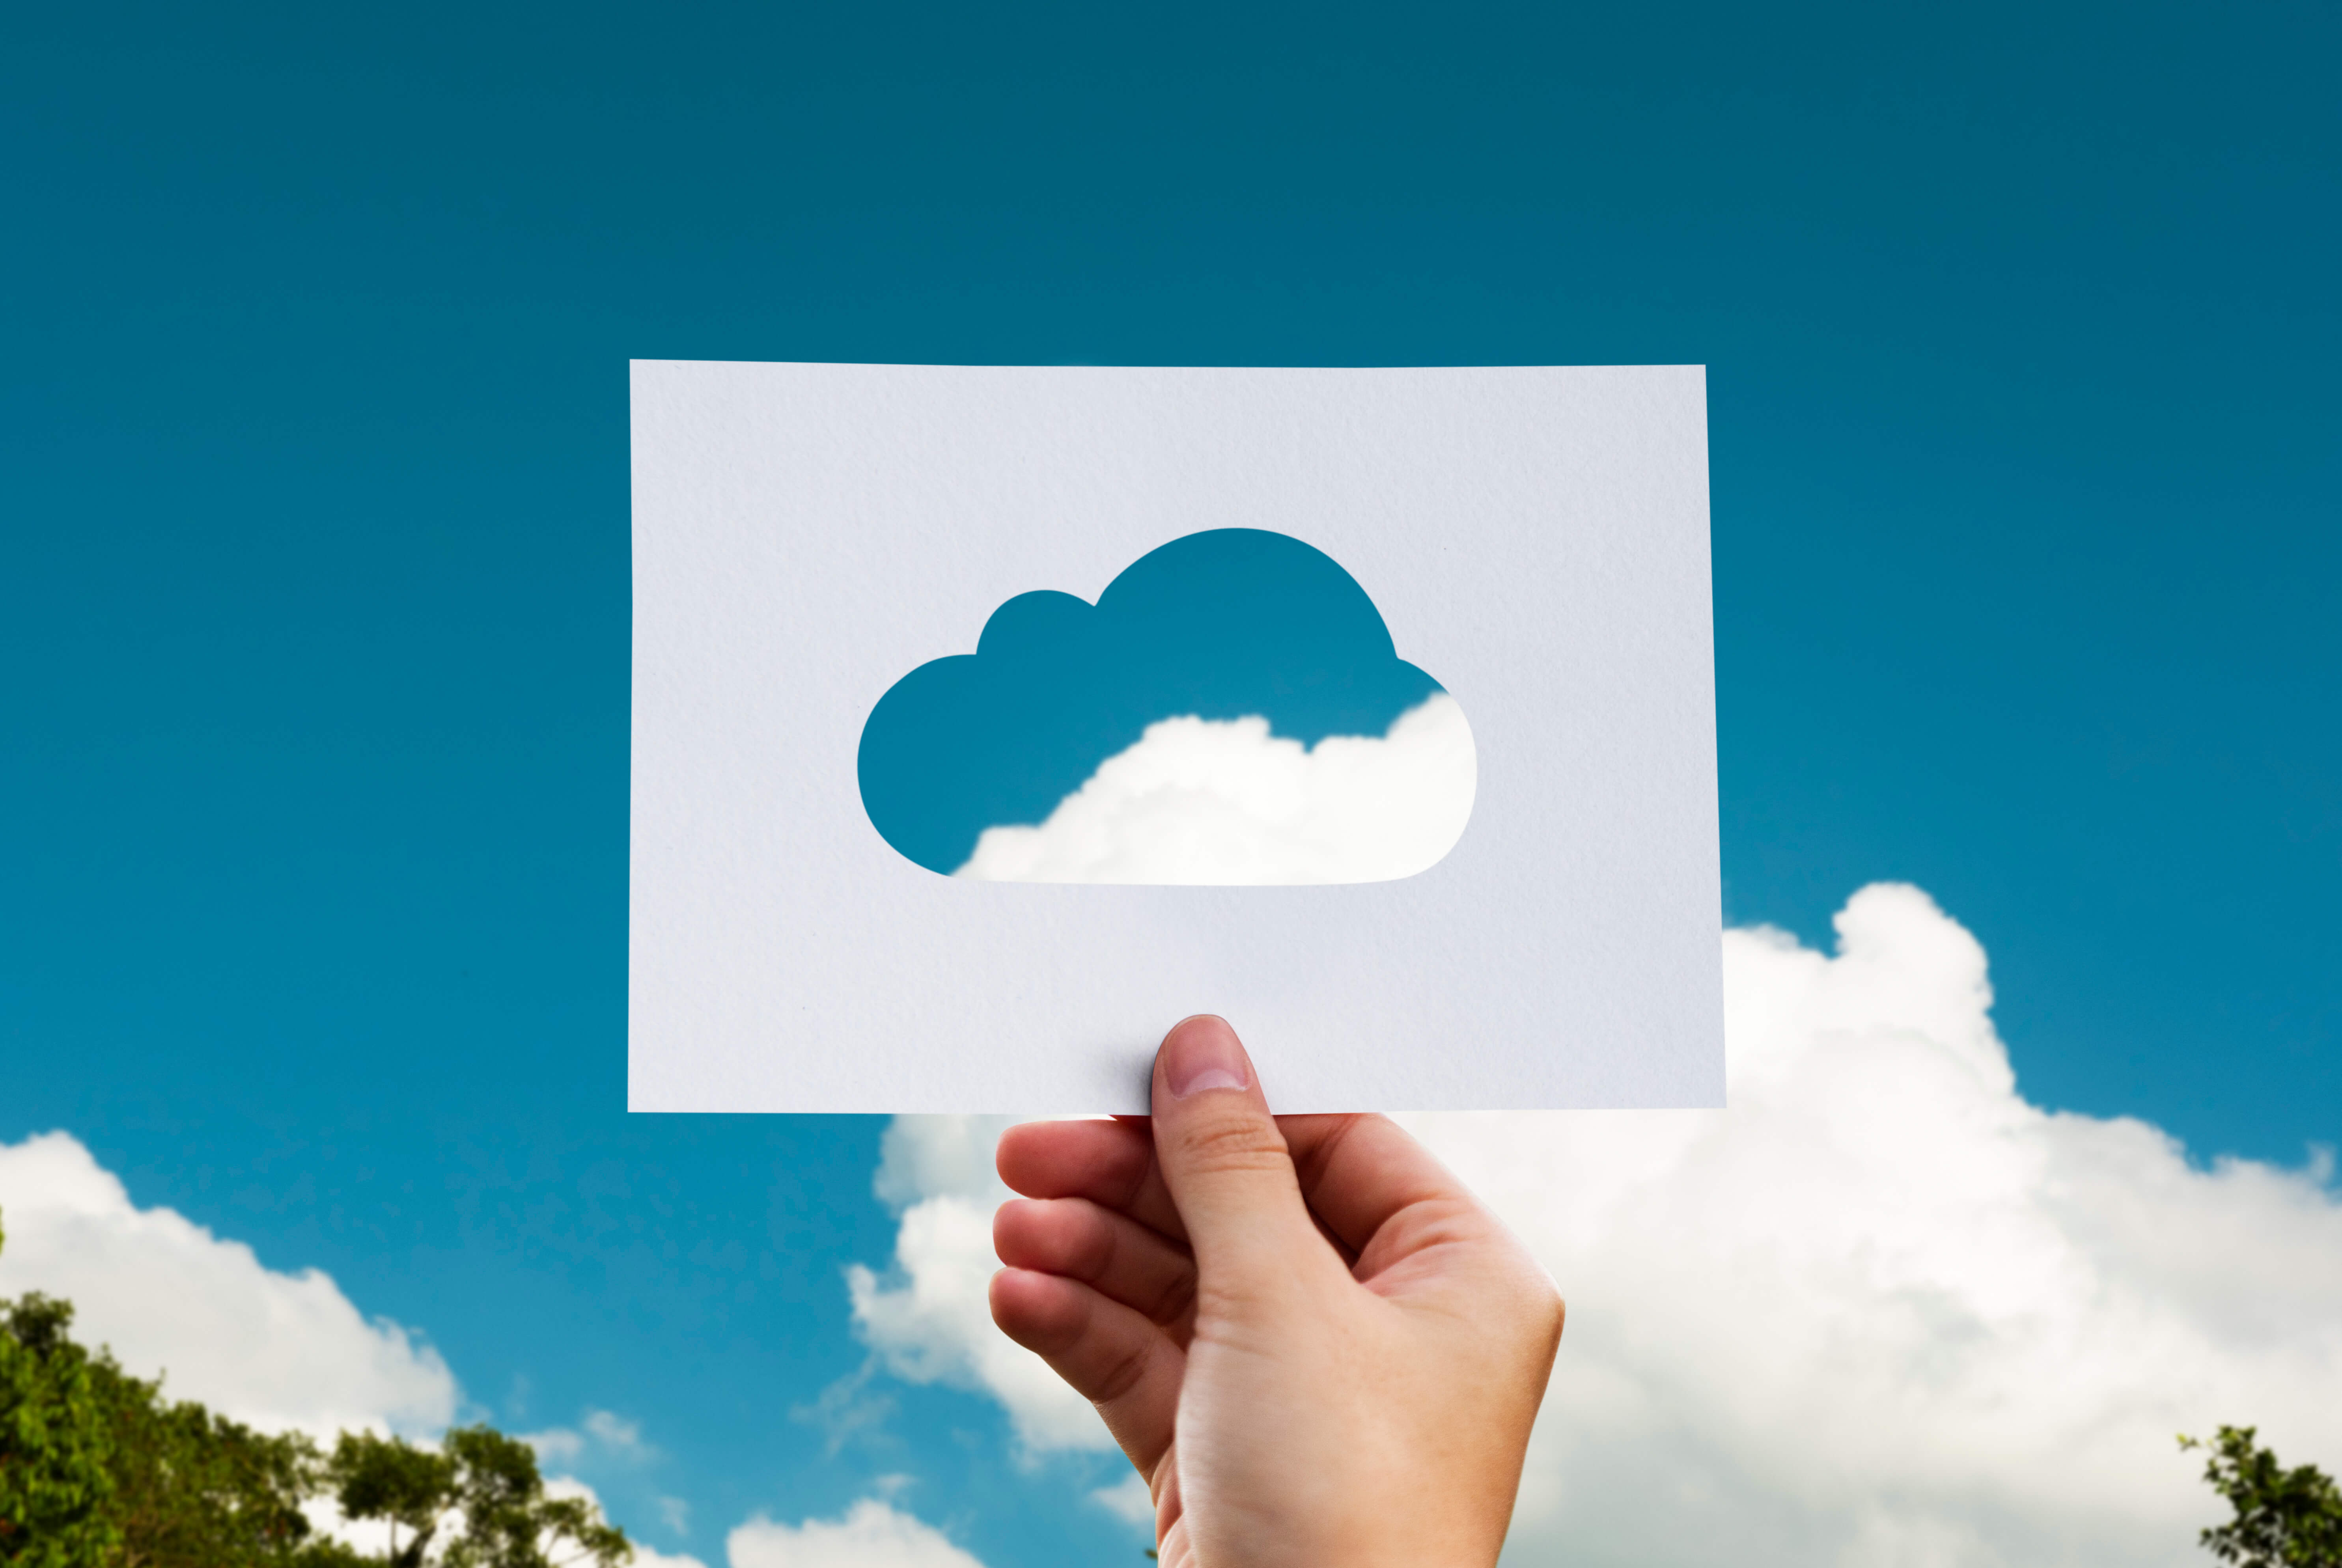 Multi-tenancy vs. single-tenancy cloud hosting